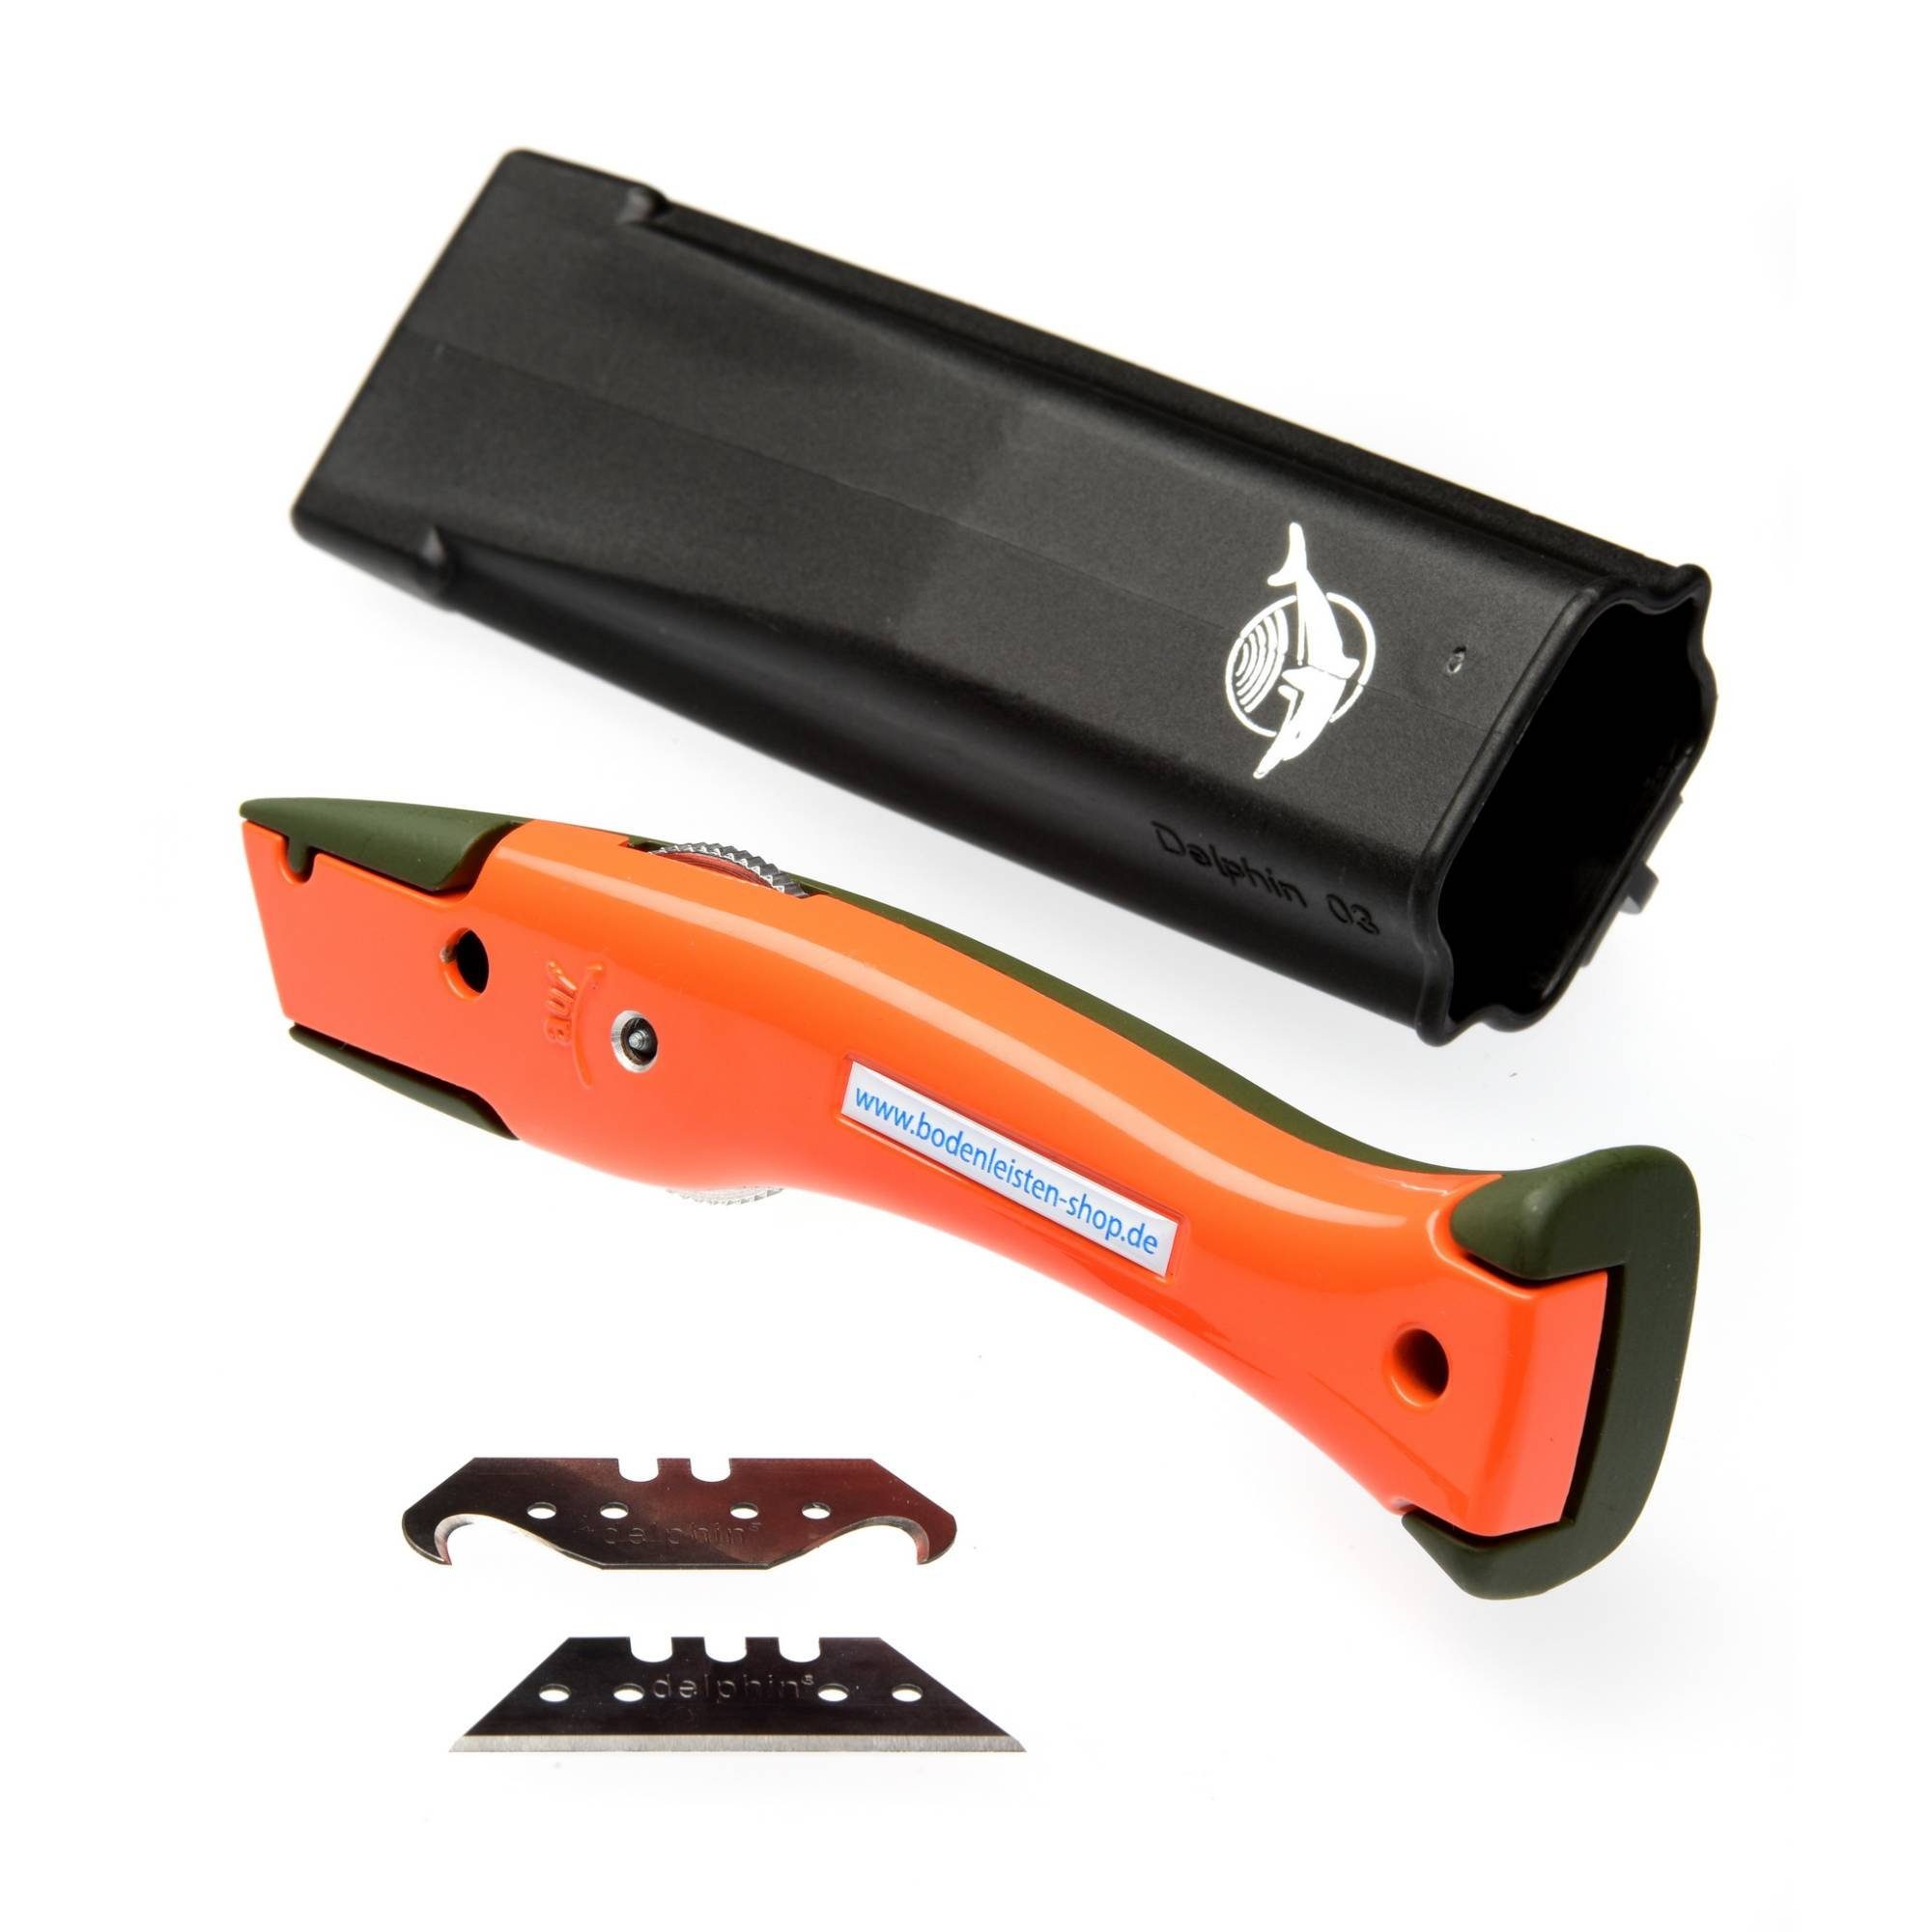 Cutter Delphin Universalmesser Style-Edition Delphin®-03 Olivgrün orange Cuttermesser -